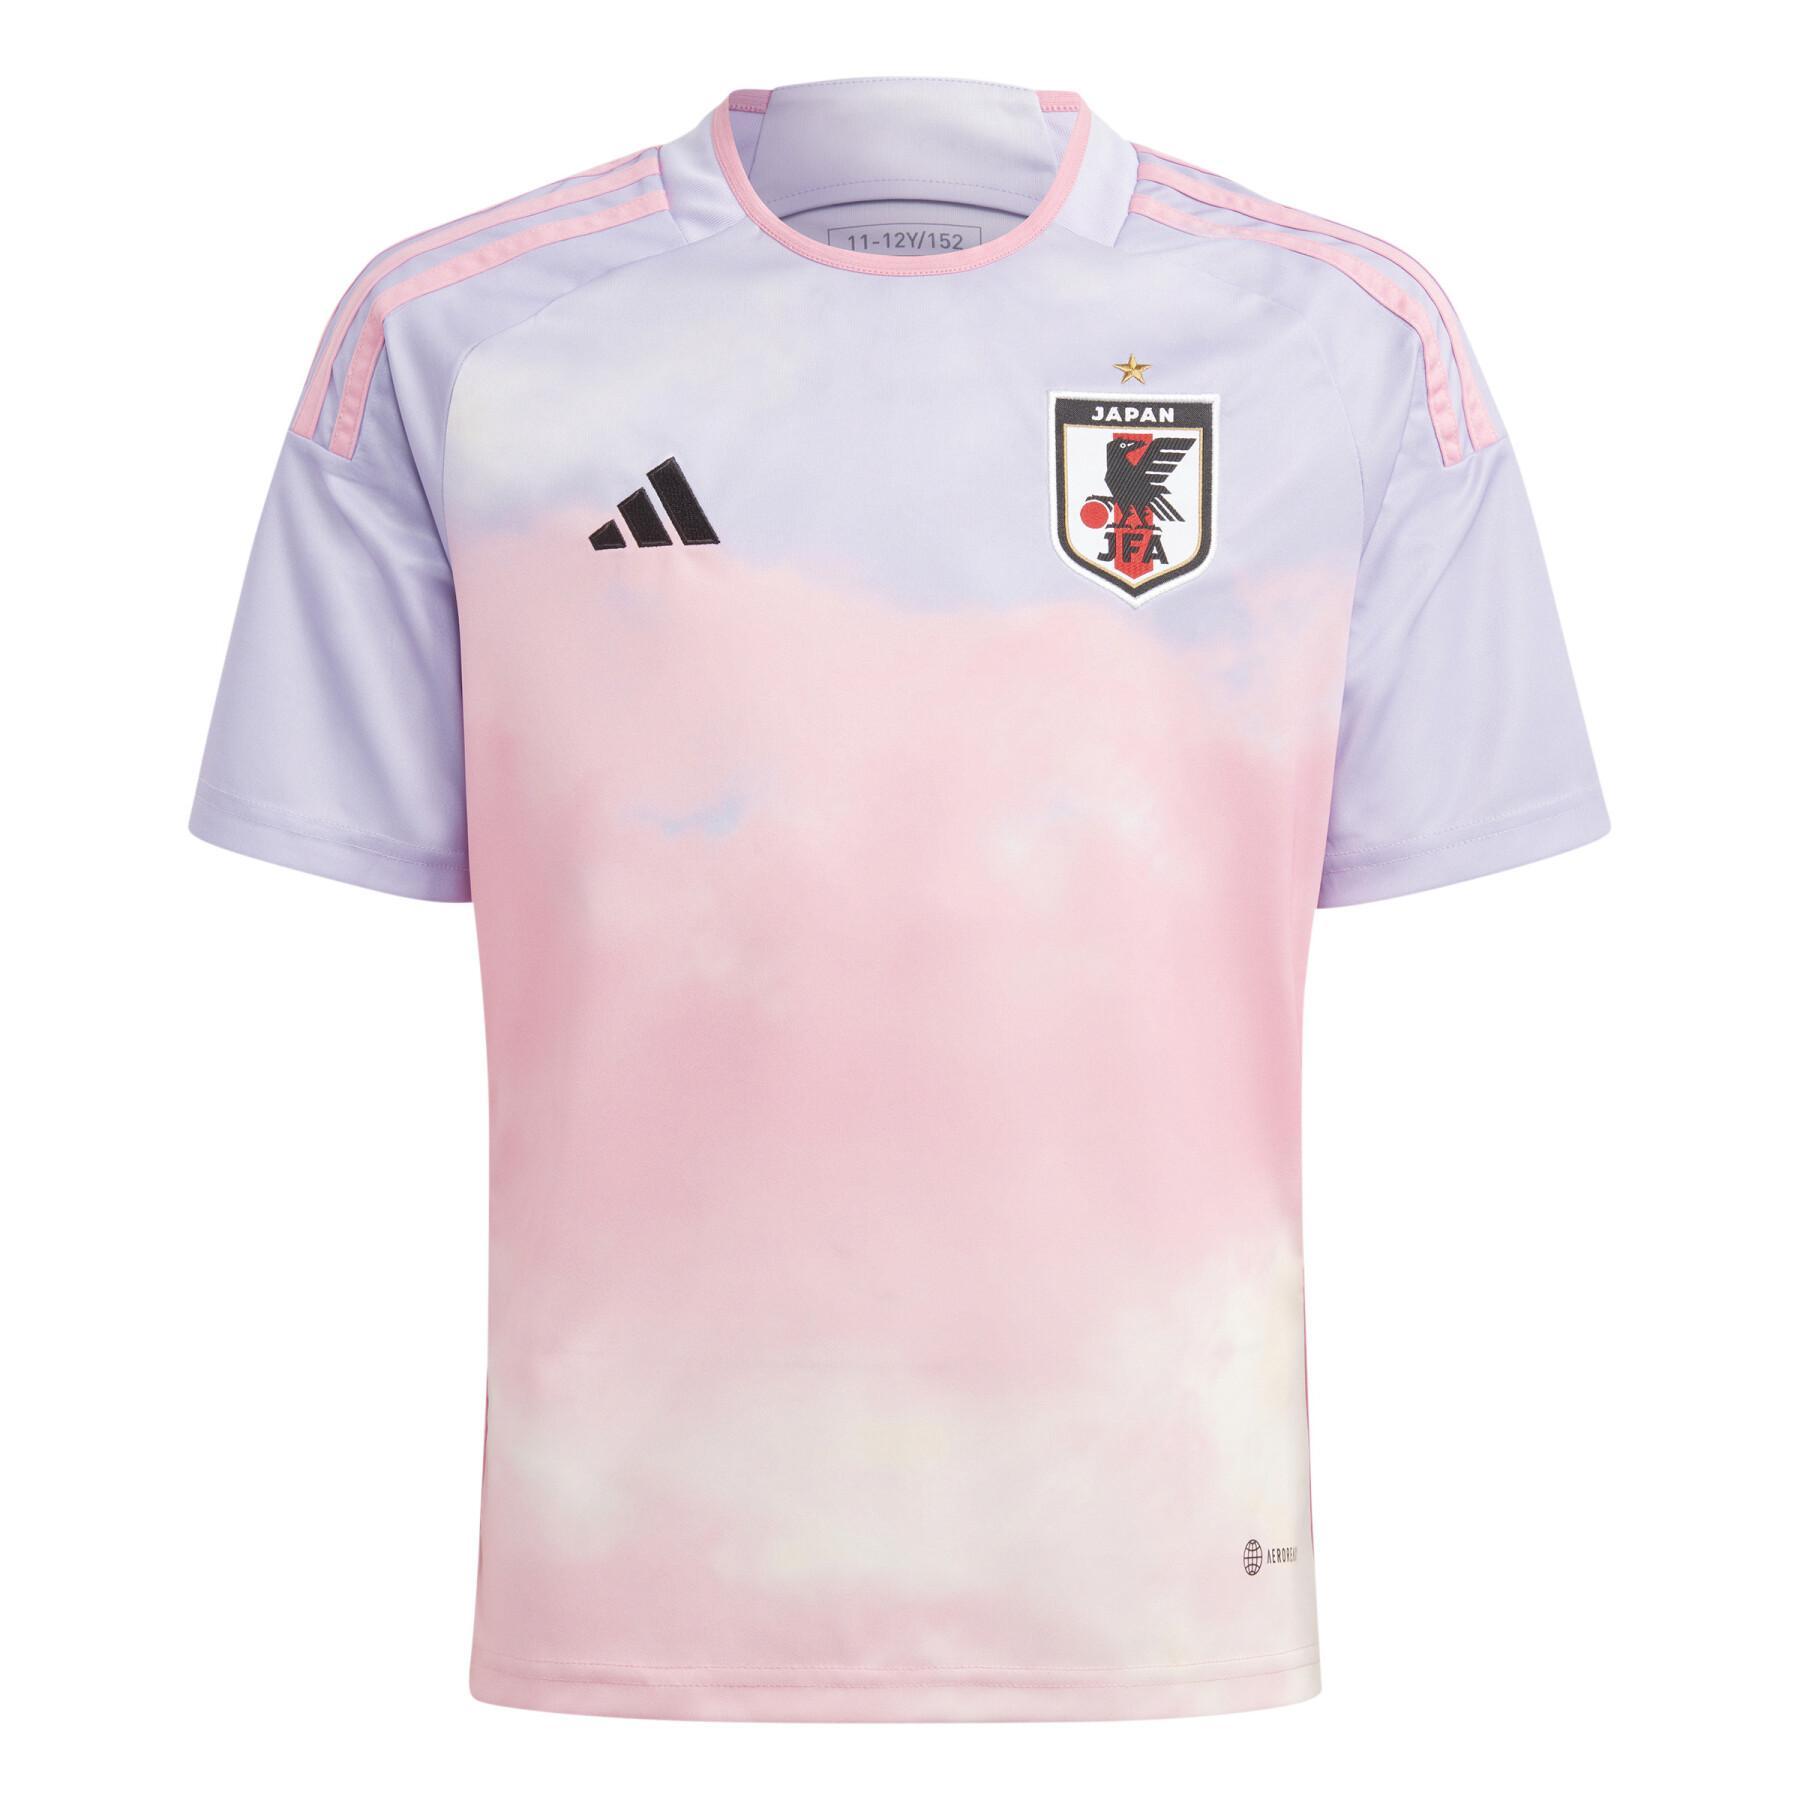 Camiseta segunda equipación infantil Japon Coupe du monde féminine 2022/23